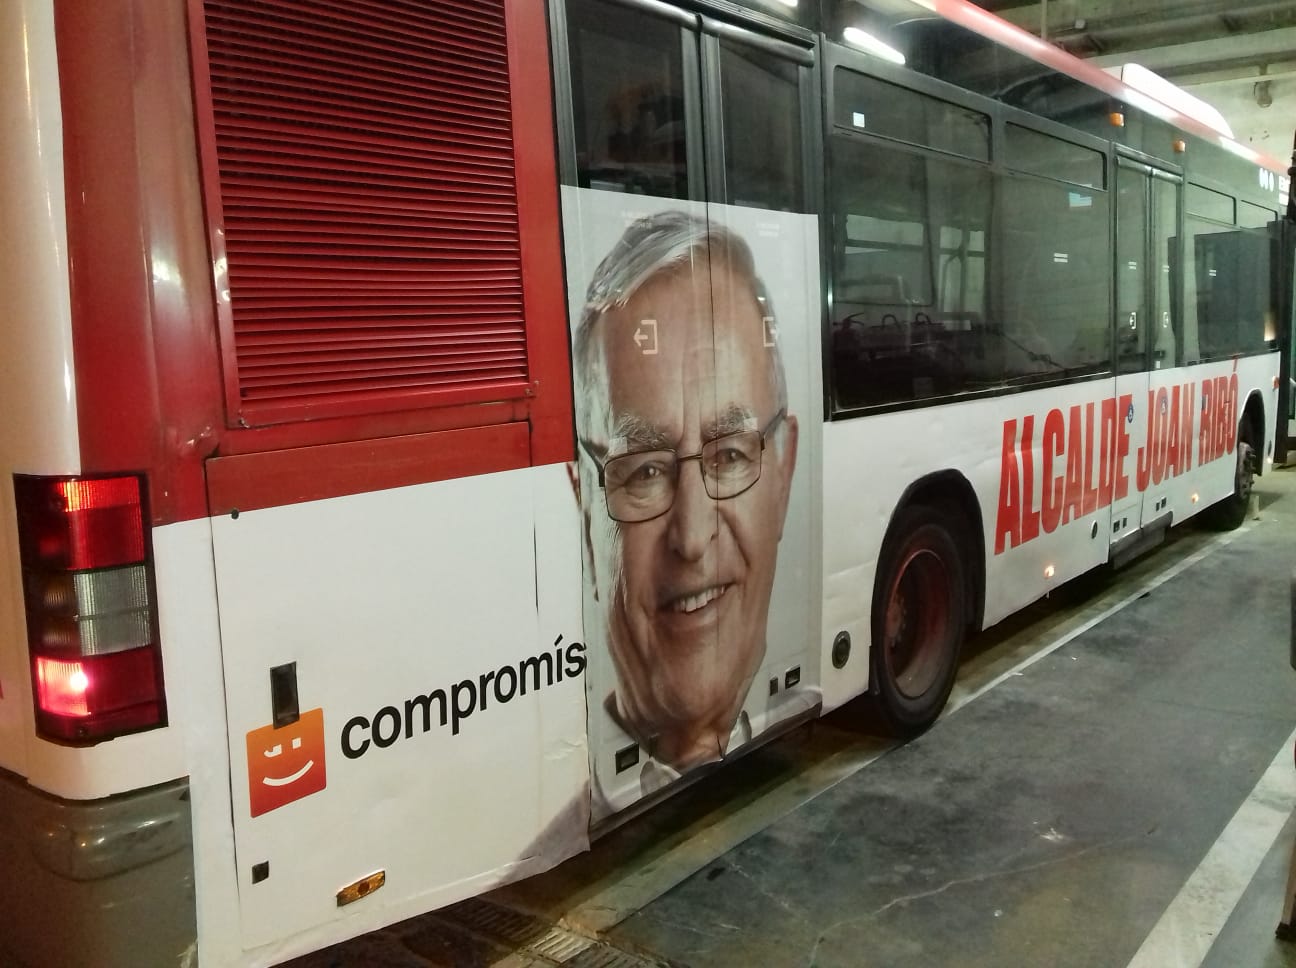 Fotografía publicidad campaña "Compromís" en autobús semiintegral